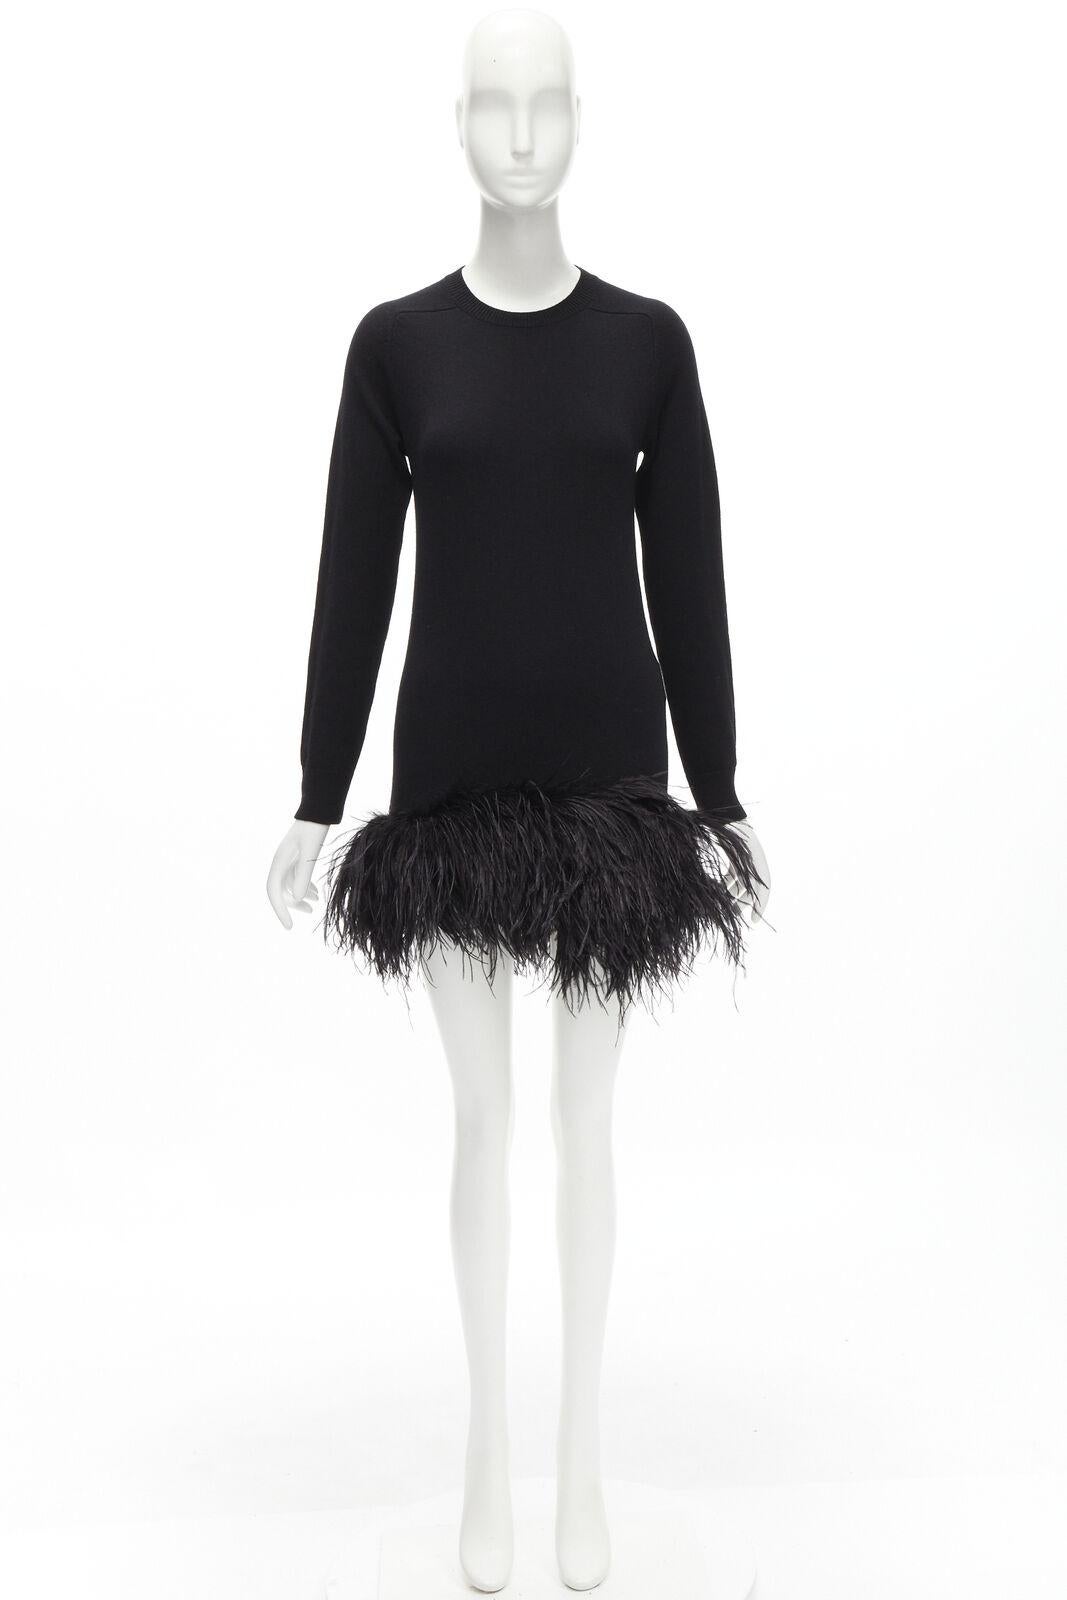 SAINT LAURENT 100% cashmere black ostrich feather trim mini sweater dress XS For Sale 6